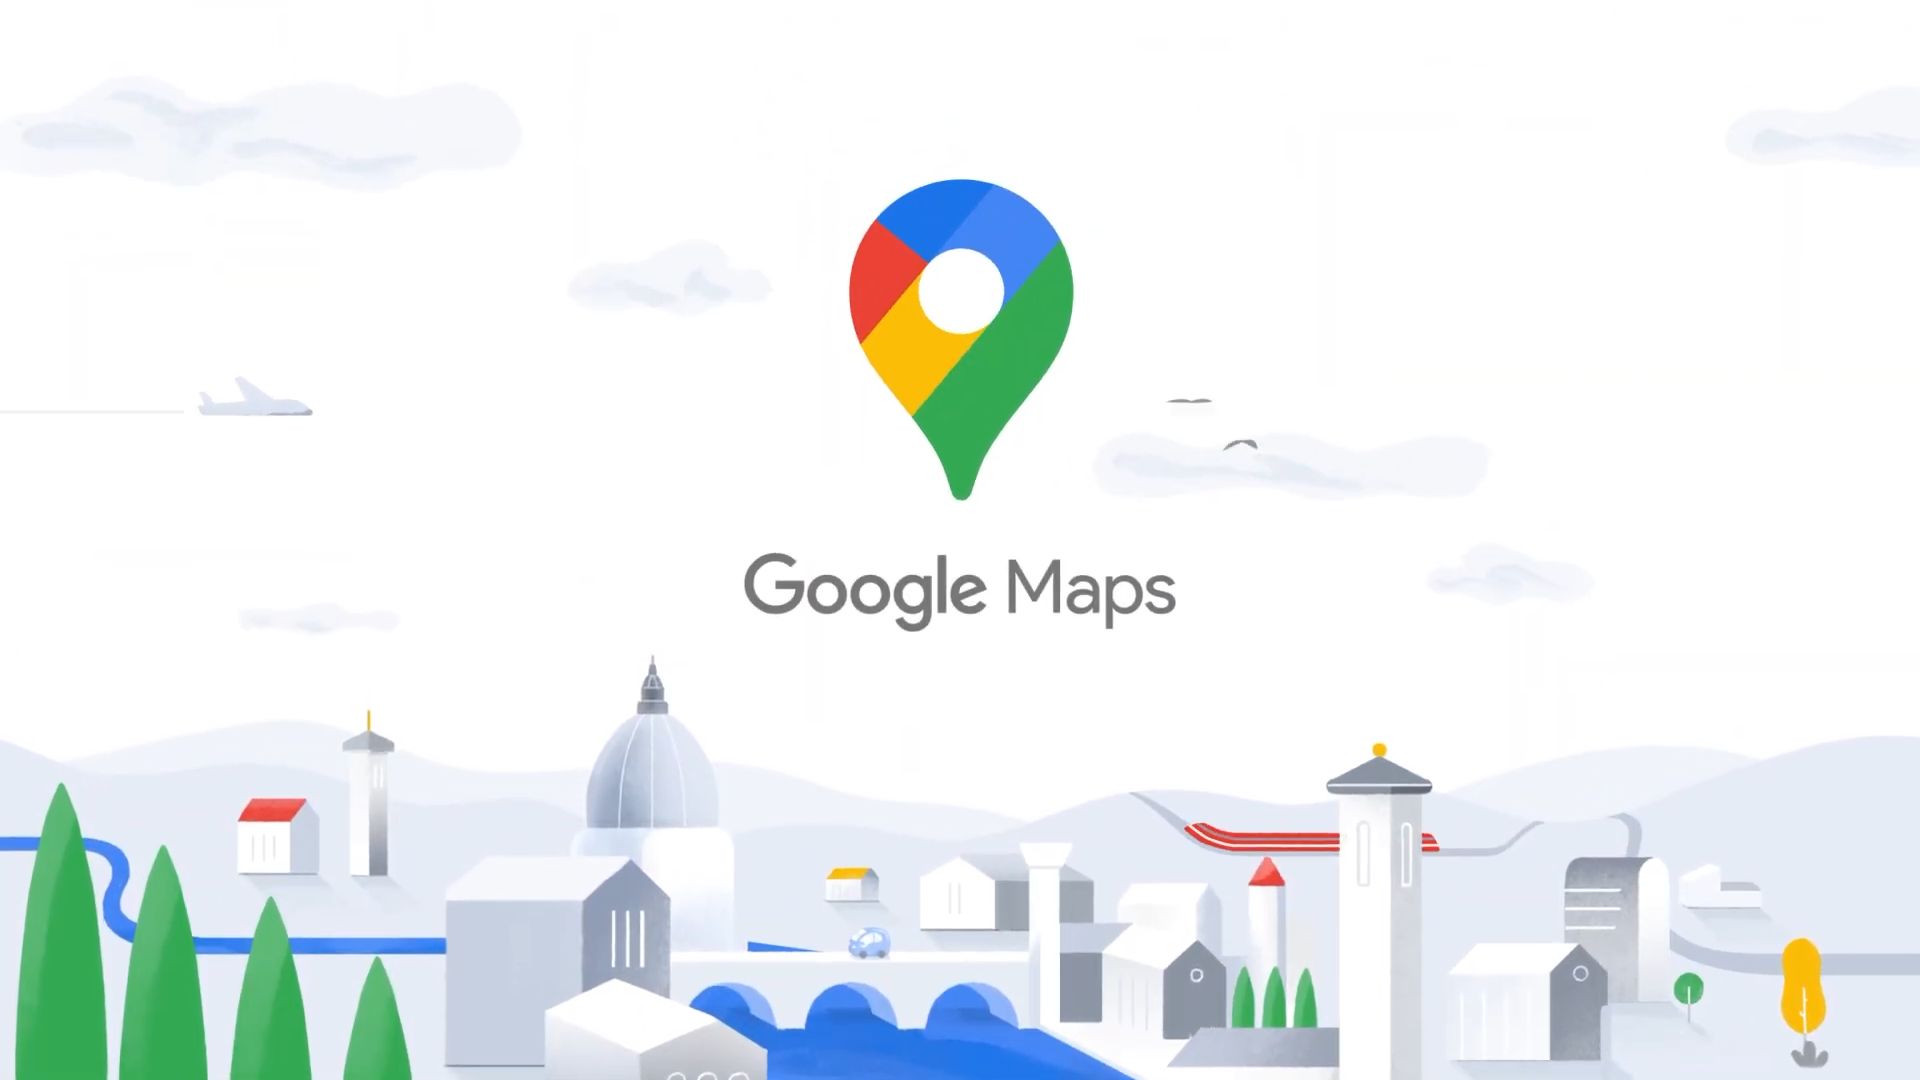 Google Maps célèbre ses 15 ans avec un nouveau look et de nouvelles fonctionnalités